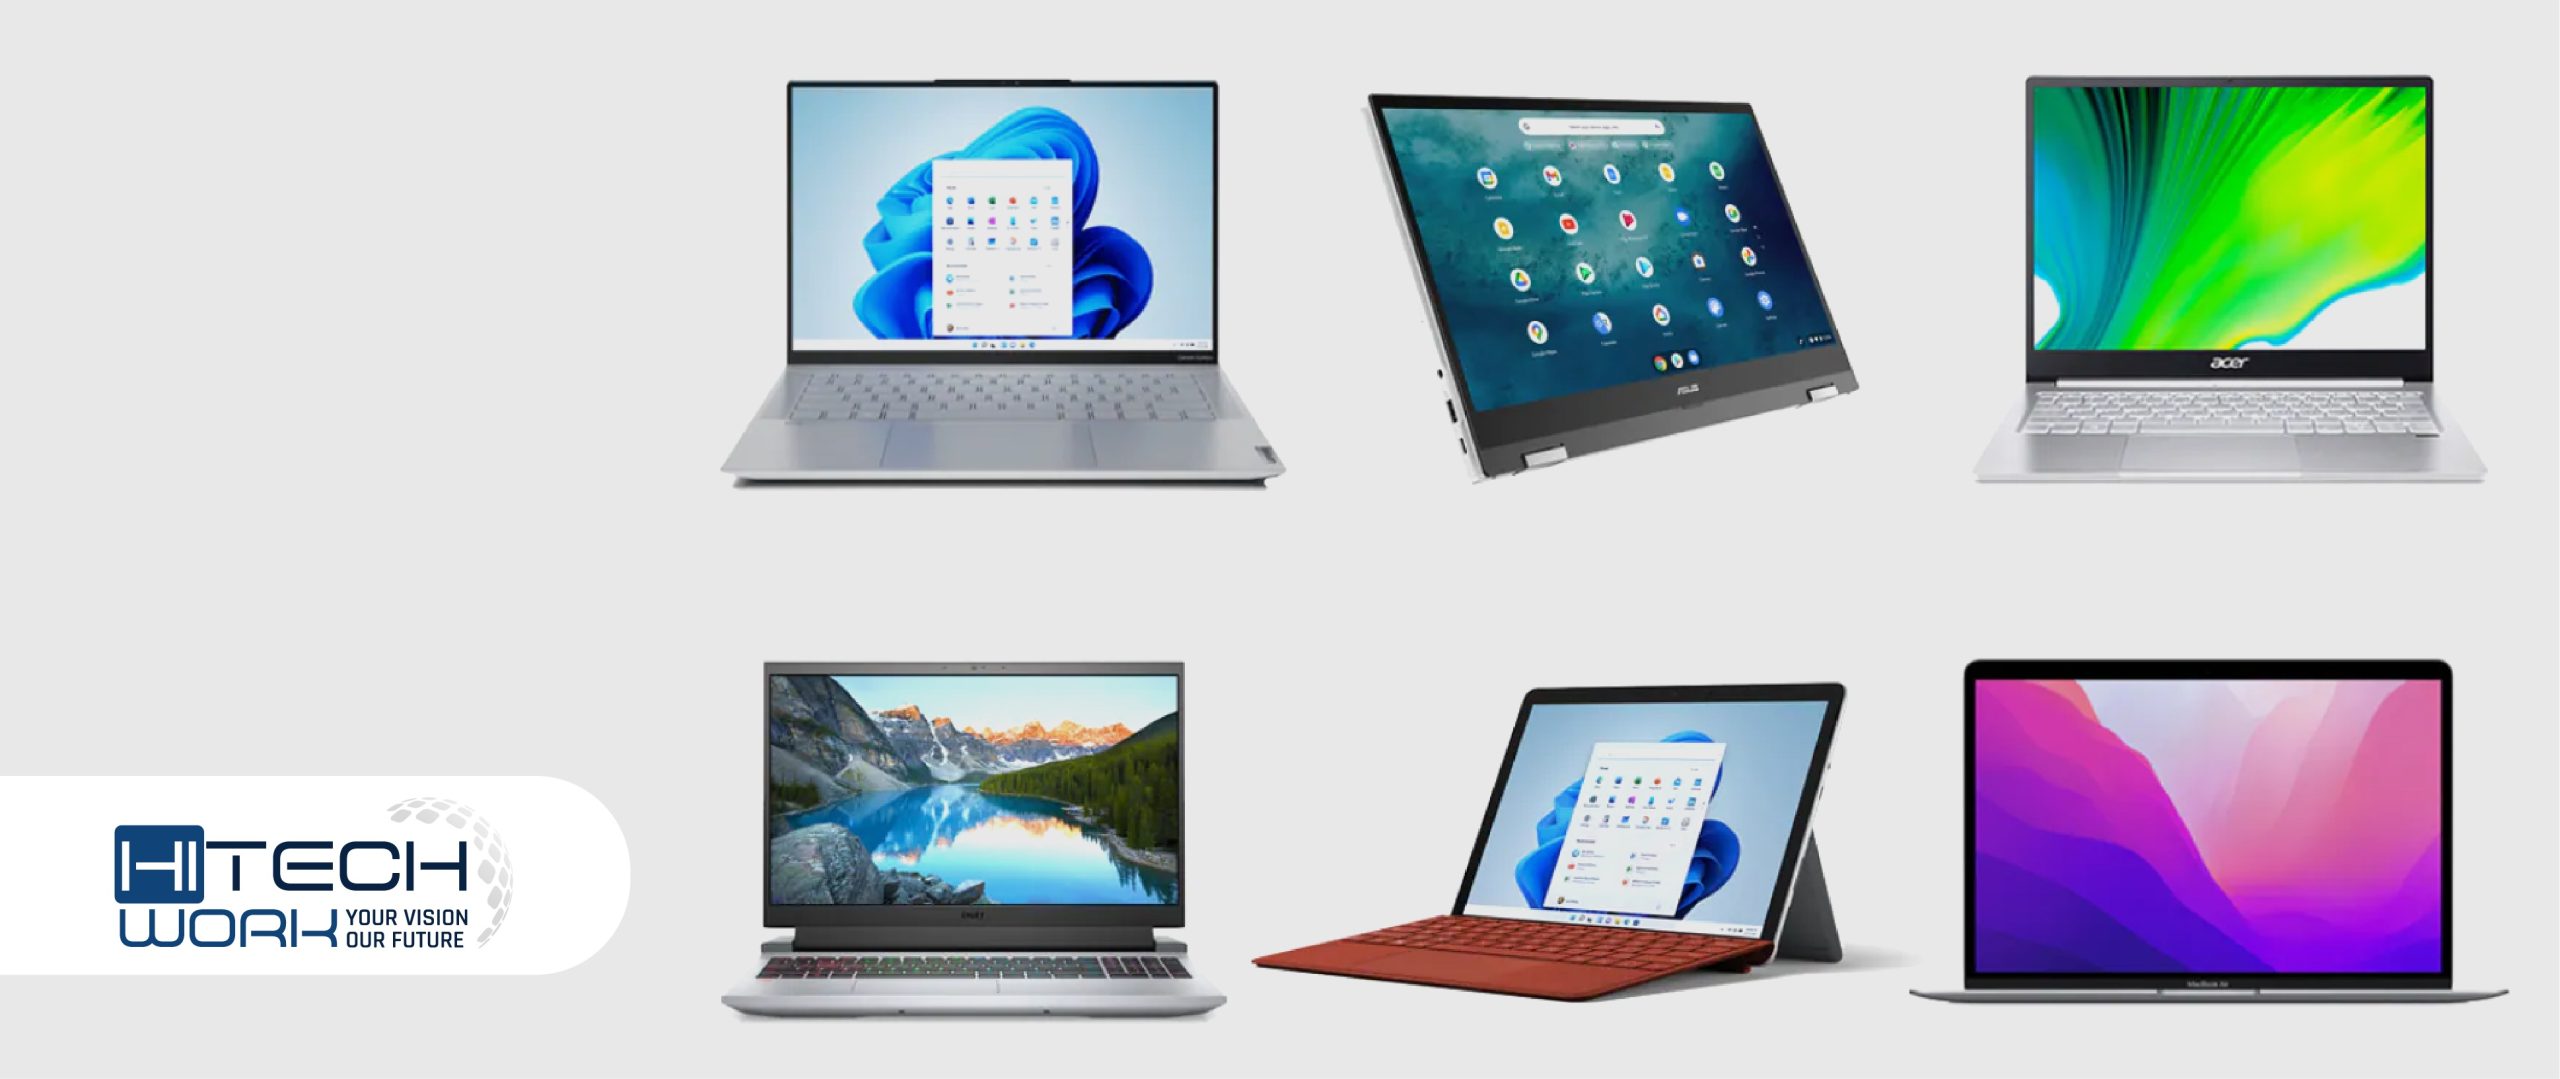 Top Laptop & Computer Brands